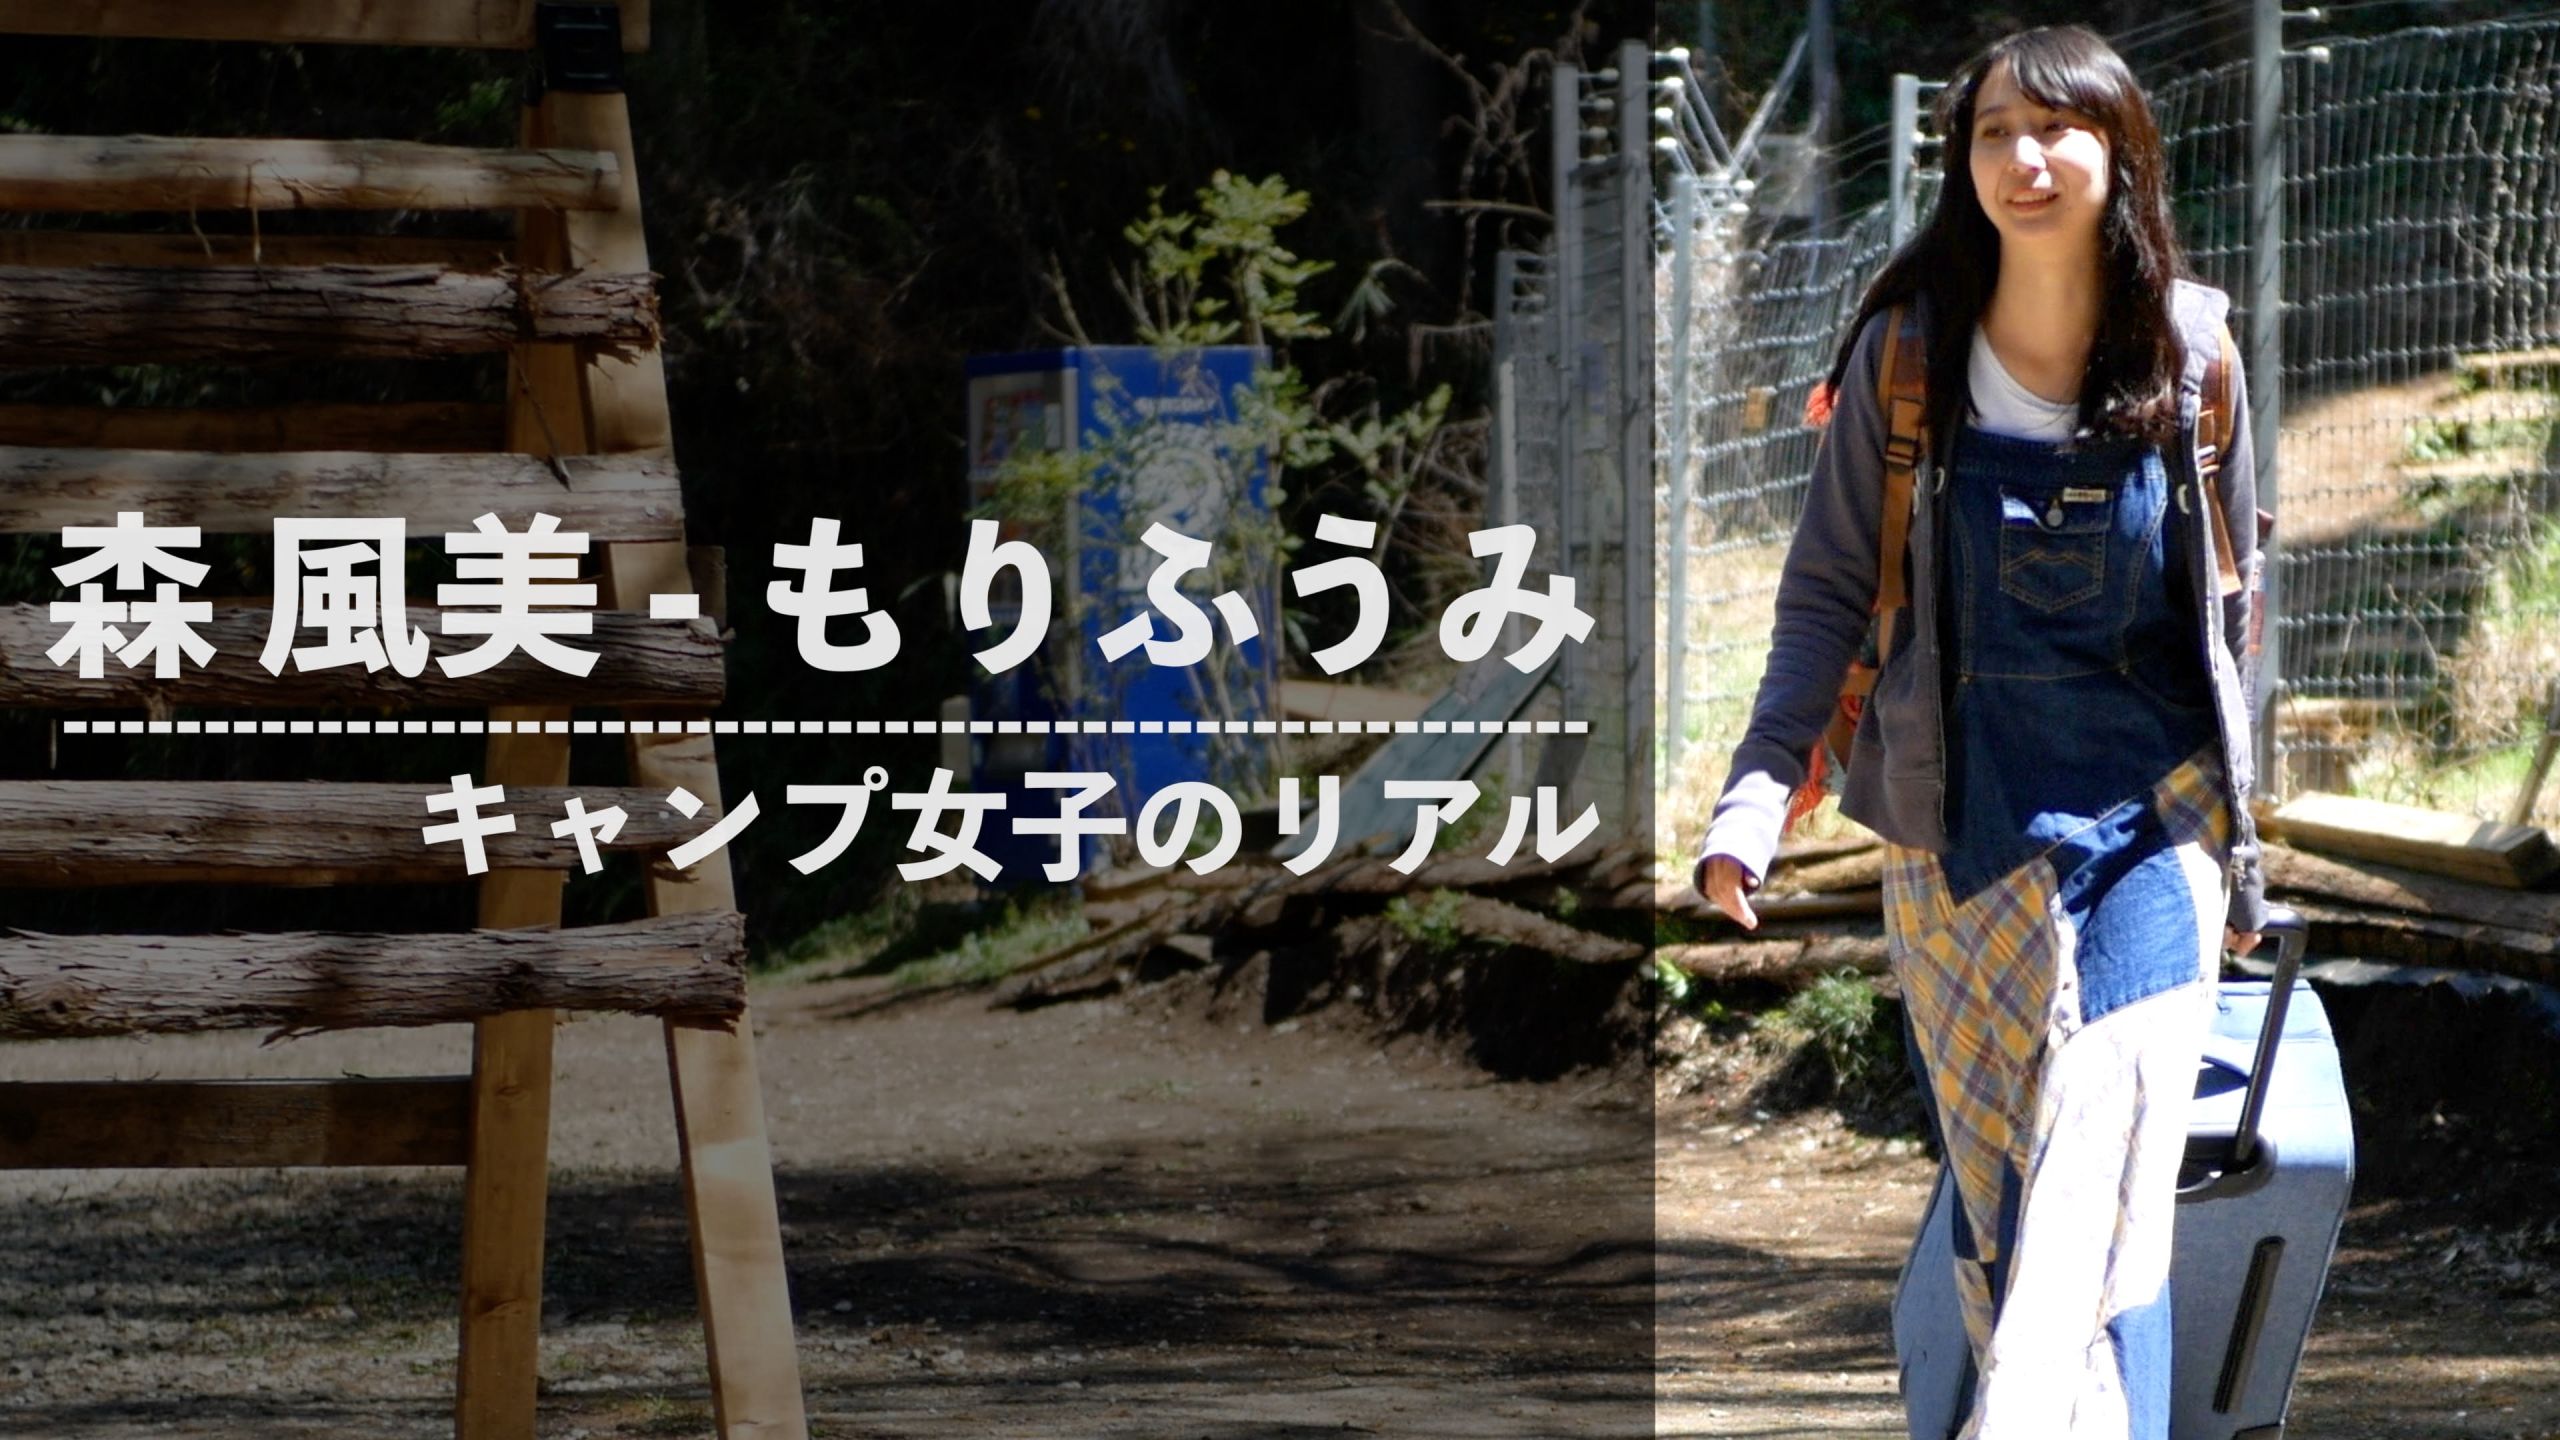 森風美 もりふうみ さんの女子ソロキャンプスタイルを取材 前編 タナちゃんねる ブログ